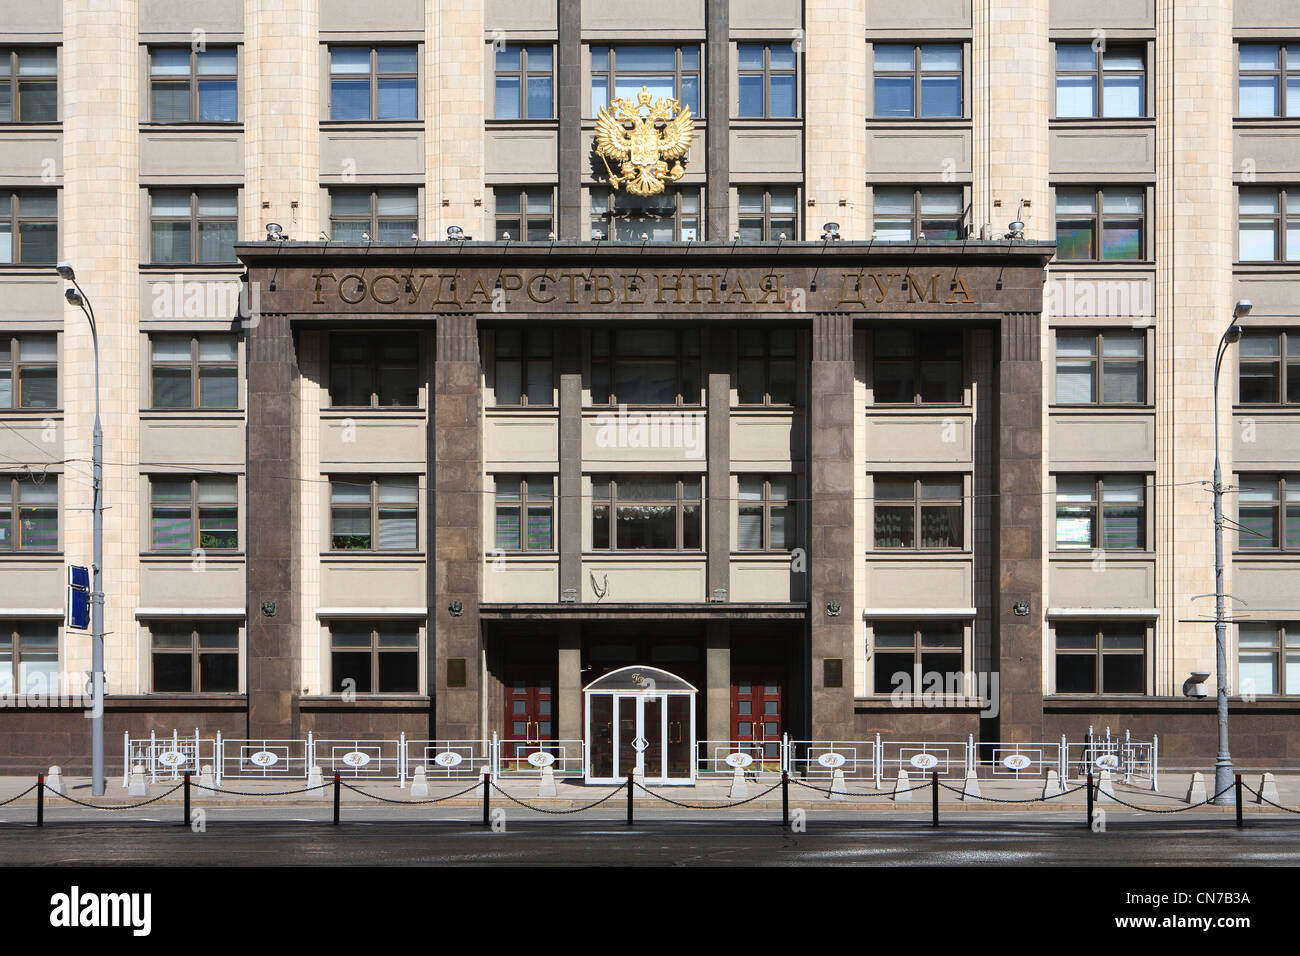 Entrada principal de la Duma Estatal (Cámara Baja), de la Federación de Rusia en Moscú, Rusia Foto de stock